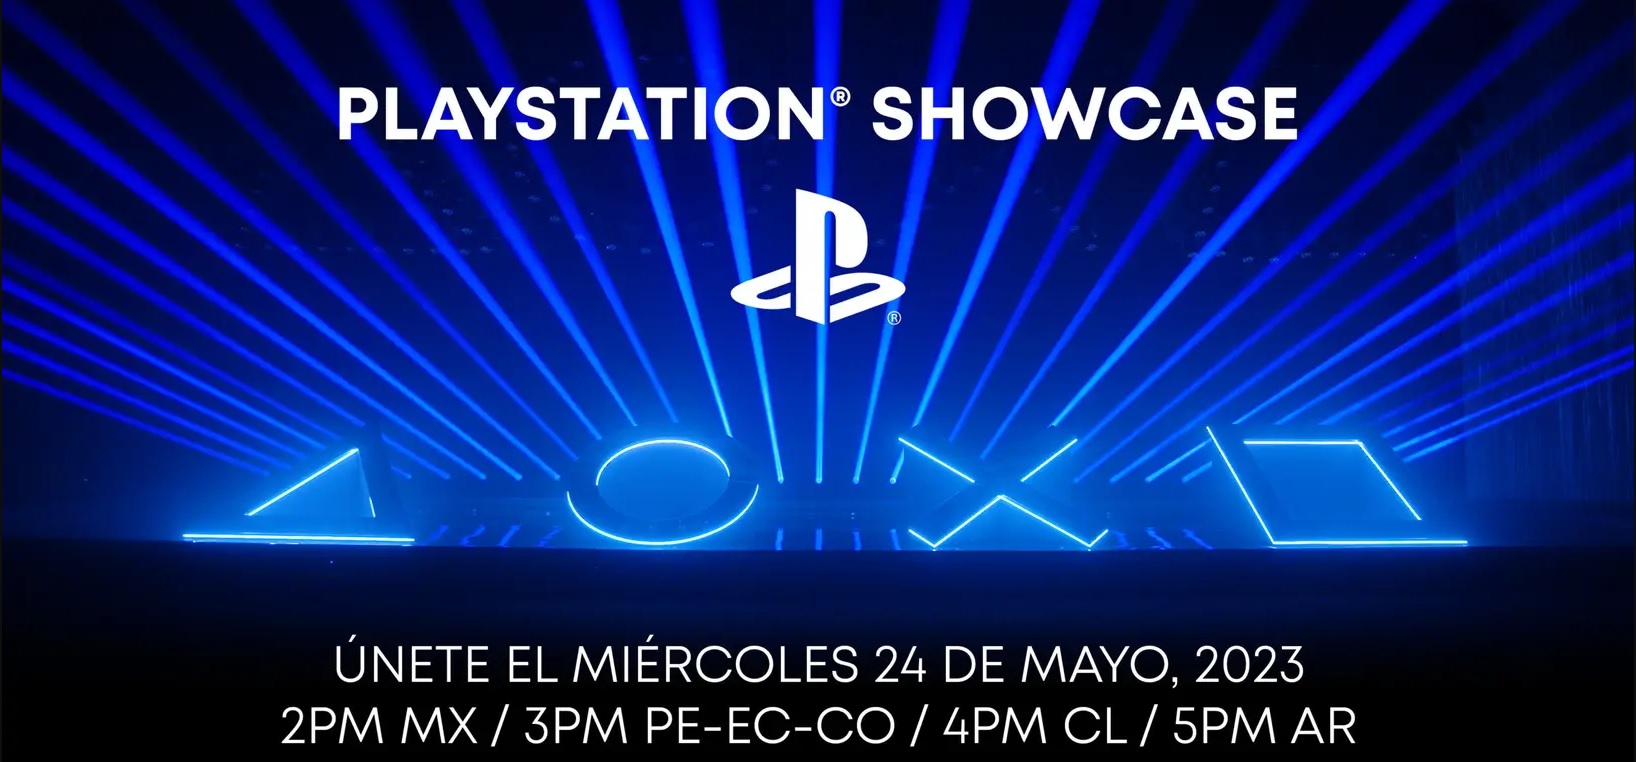 PlayStation Showcase será el próximo miércoles 24 de mayo